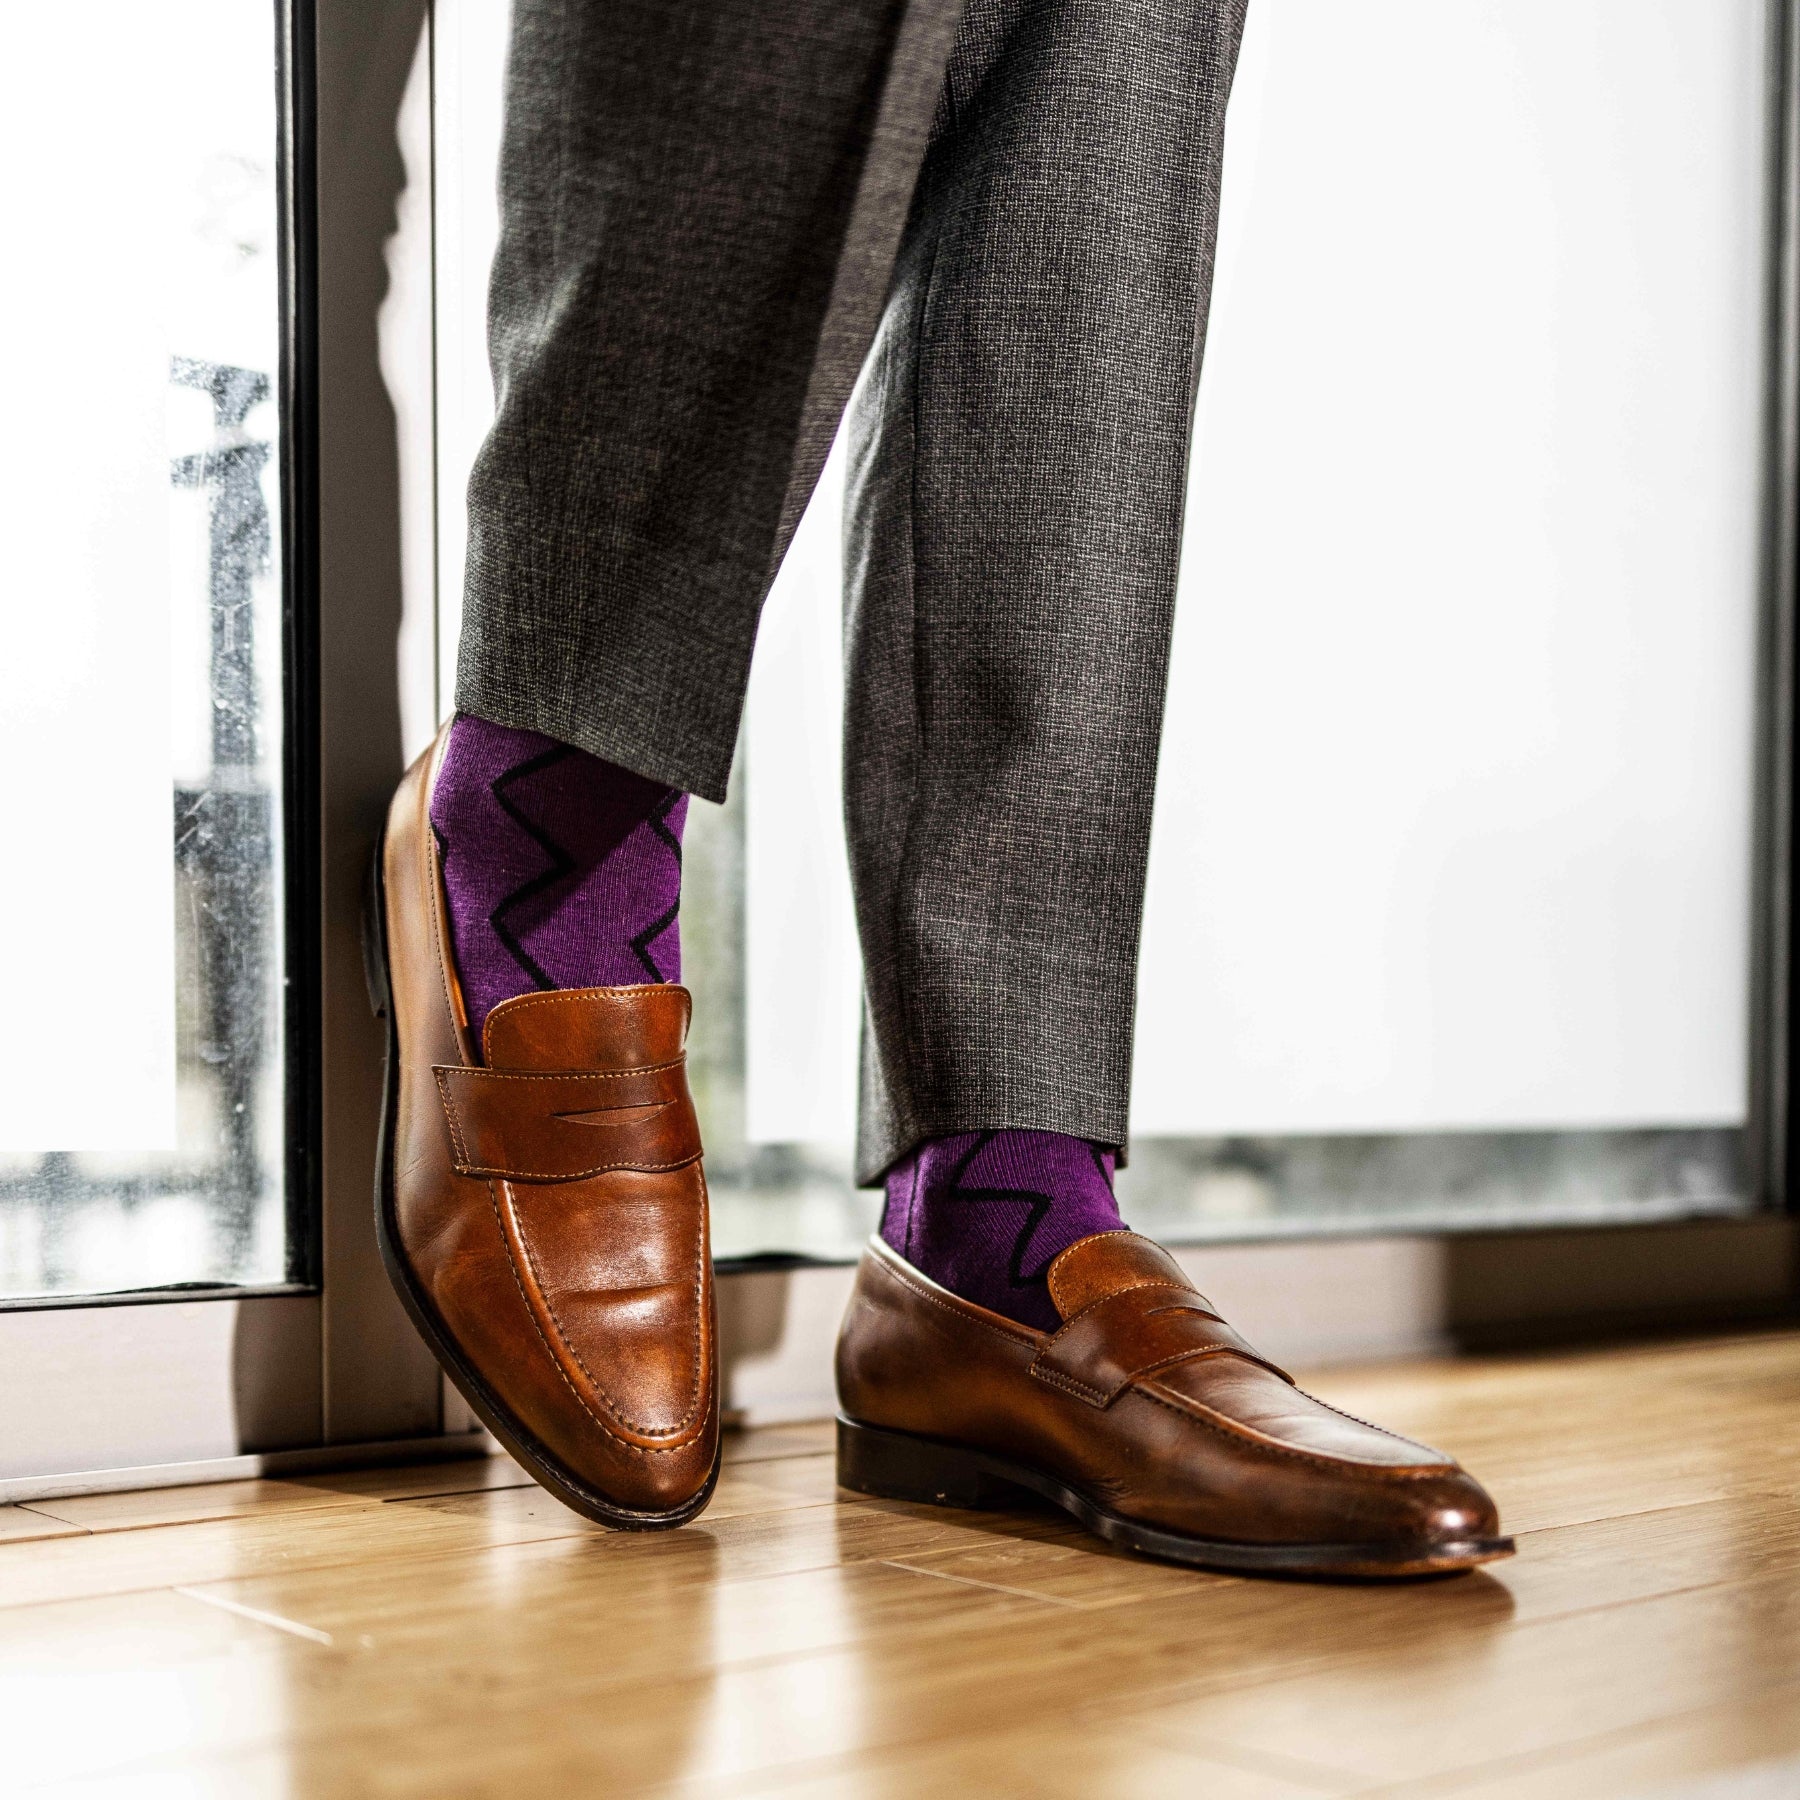 Plum purple men's dress socks with a black zigzag pattern